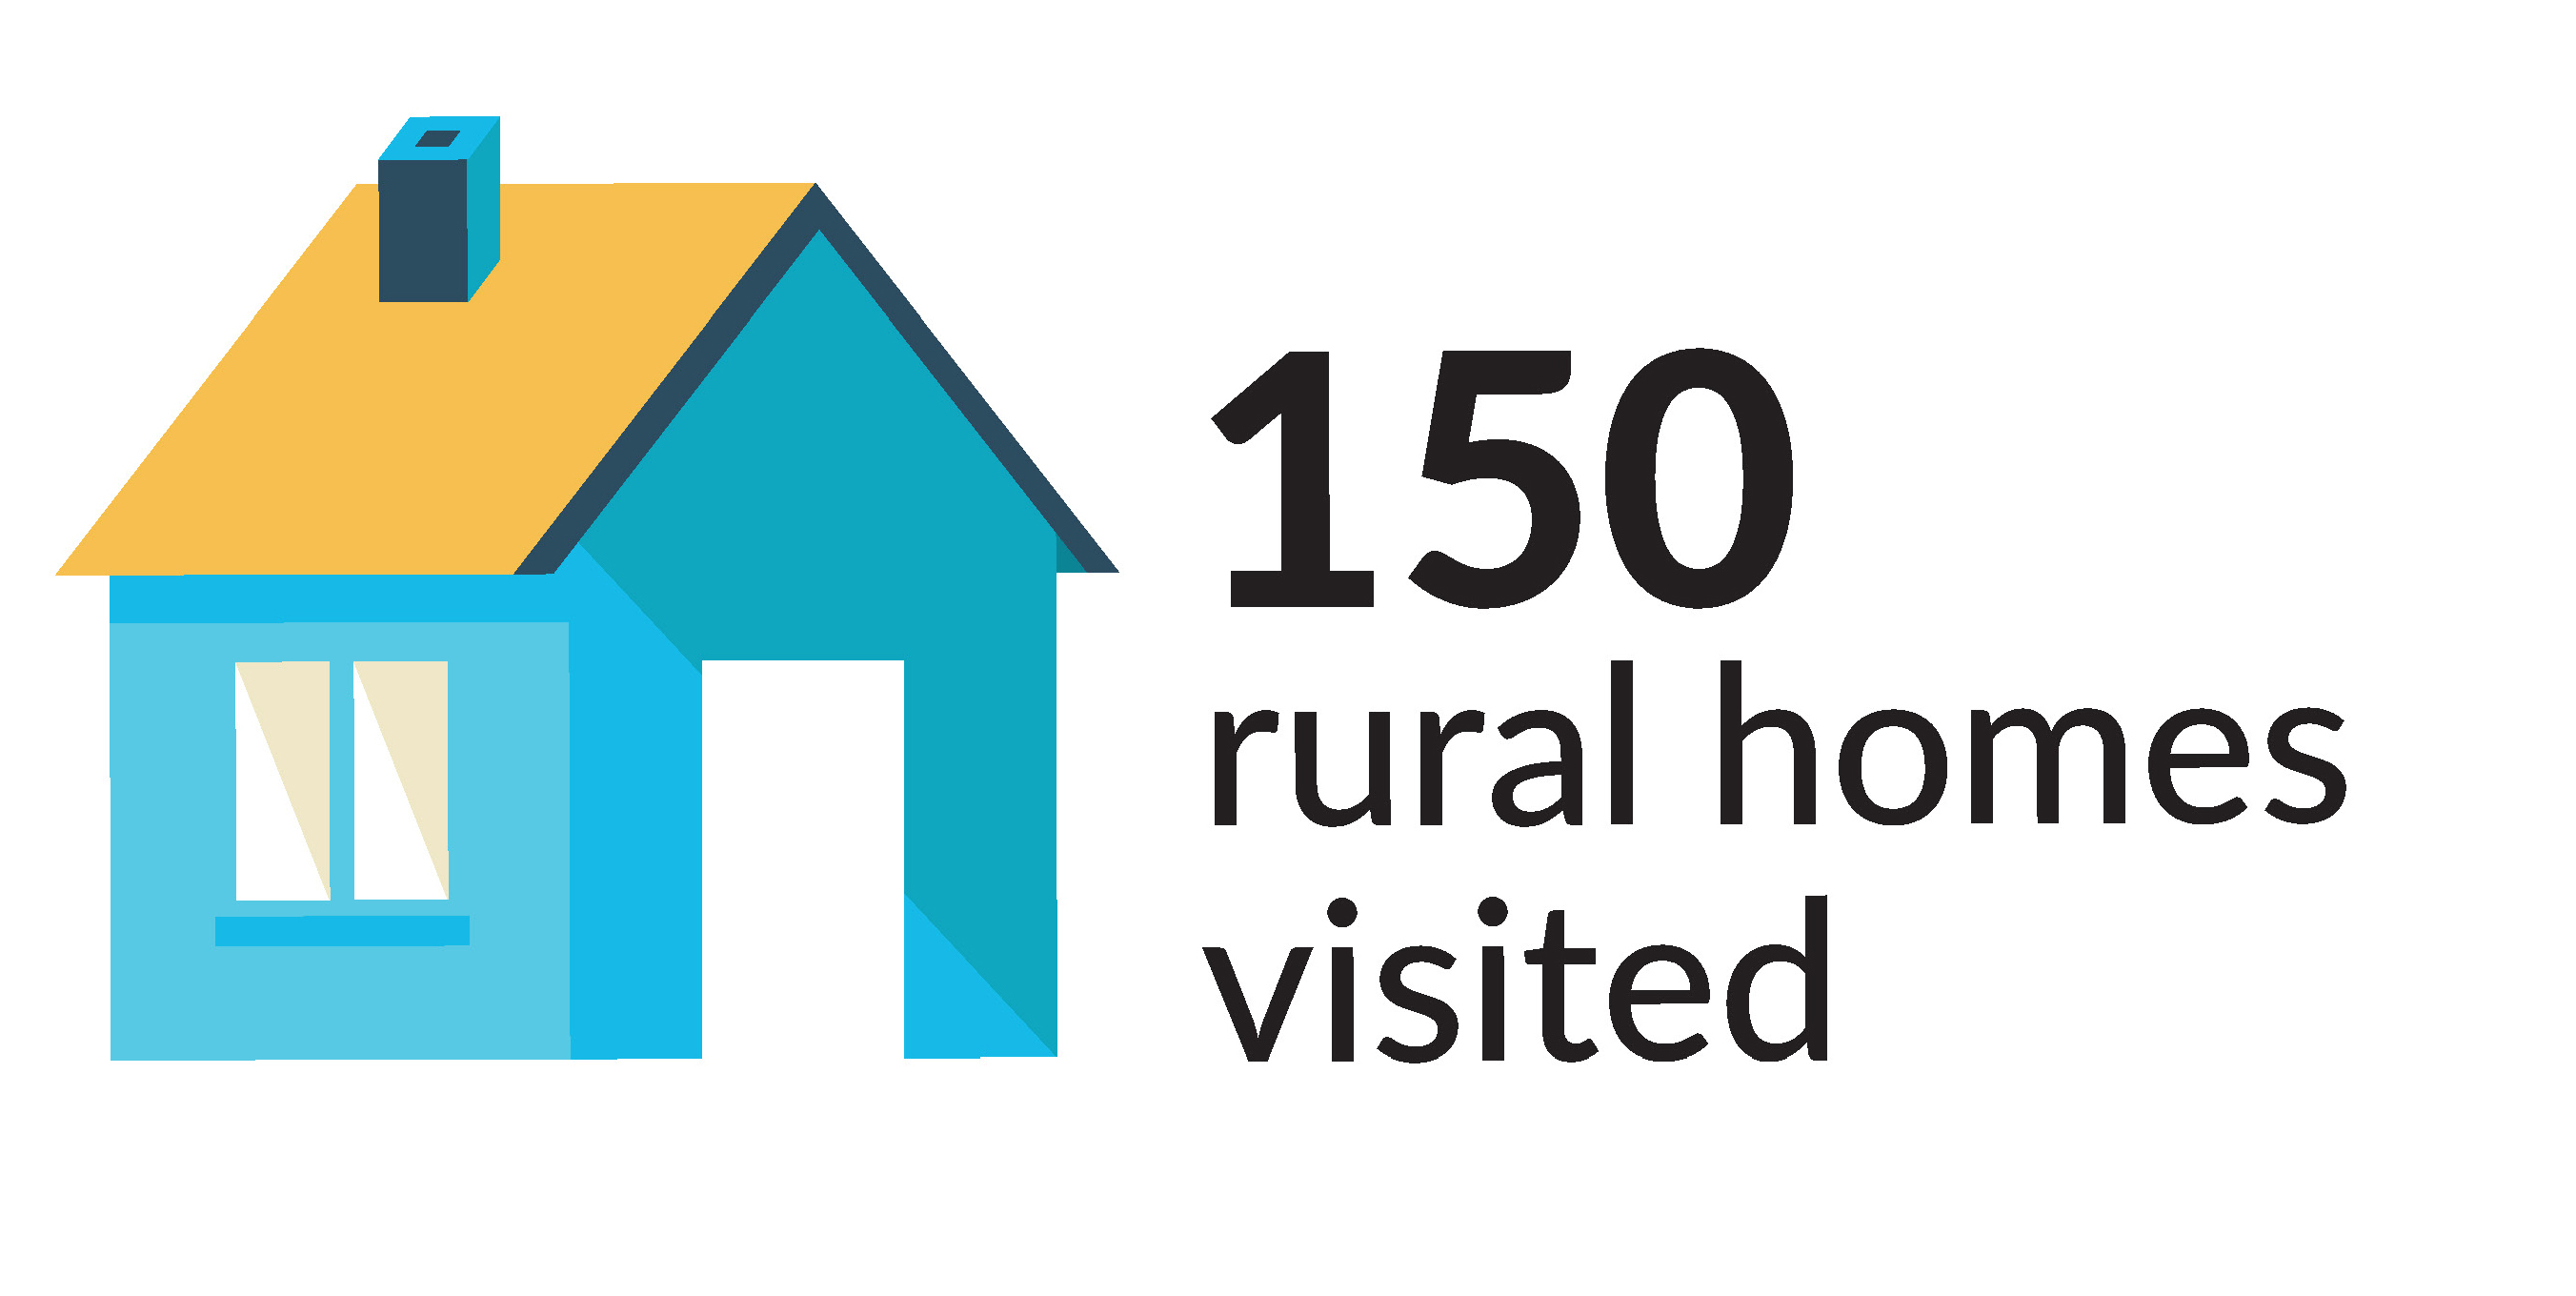 150 rural homes visited